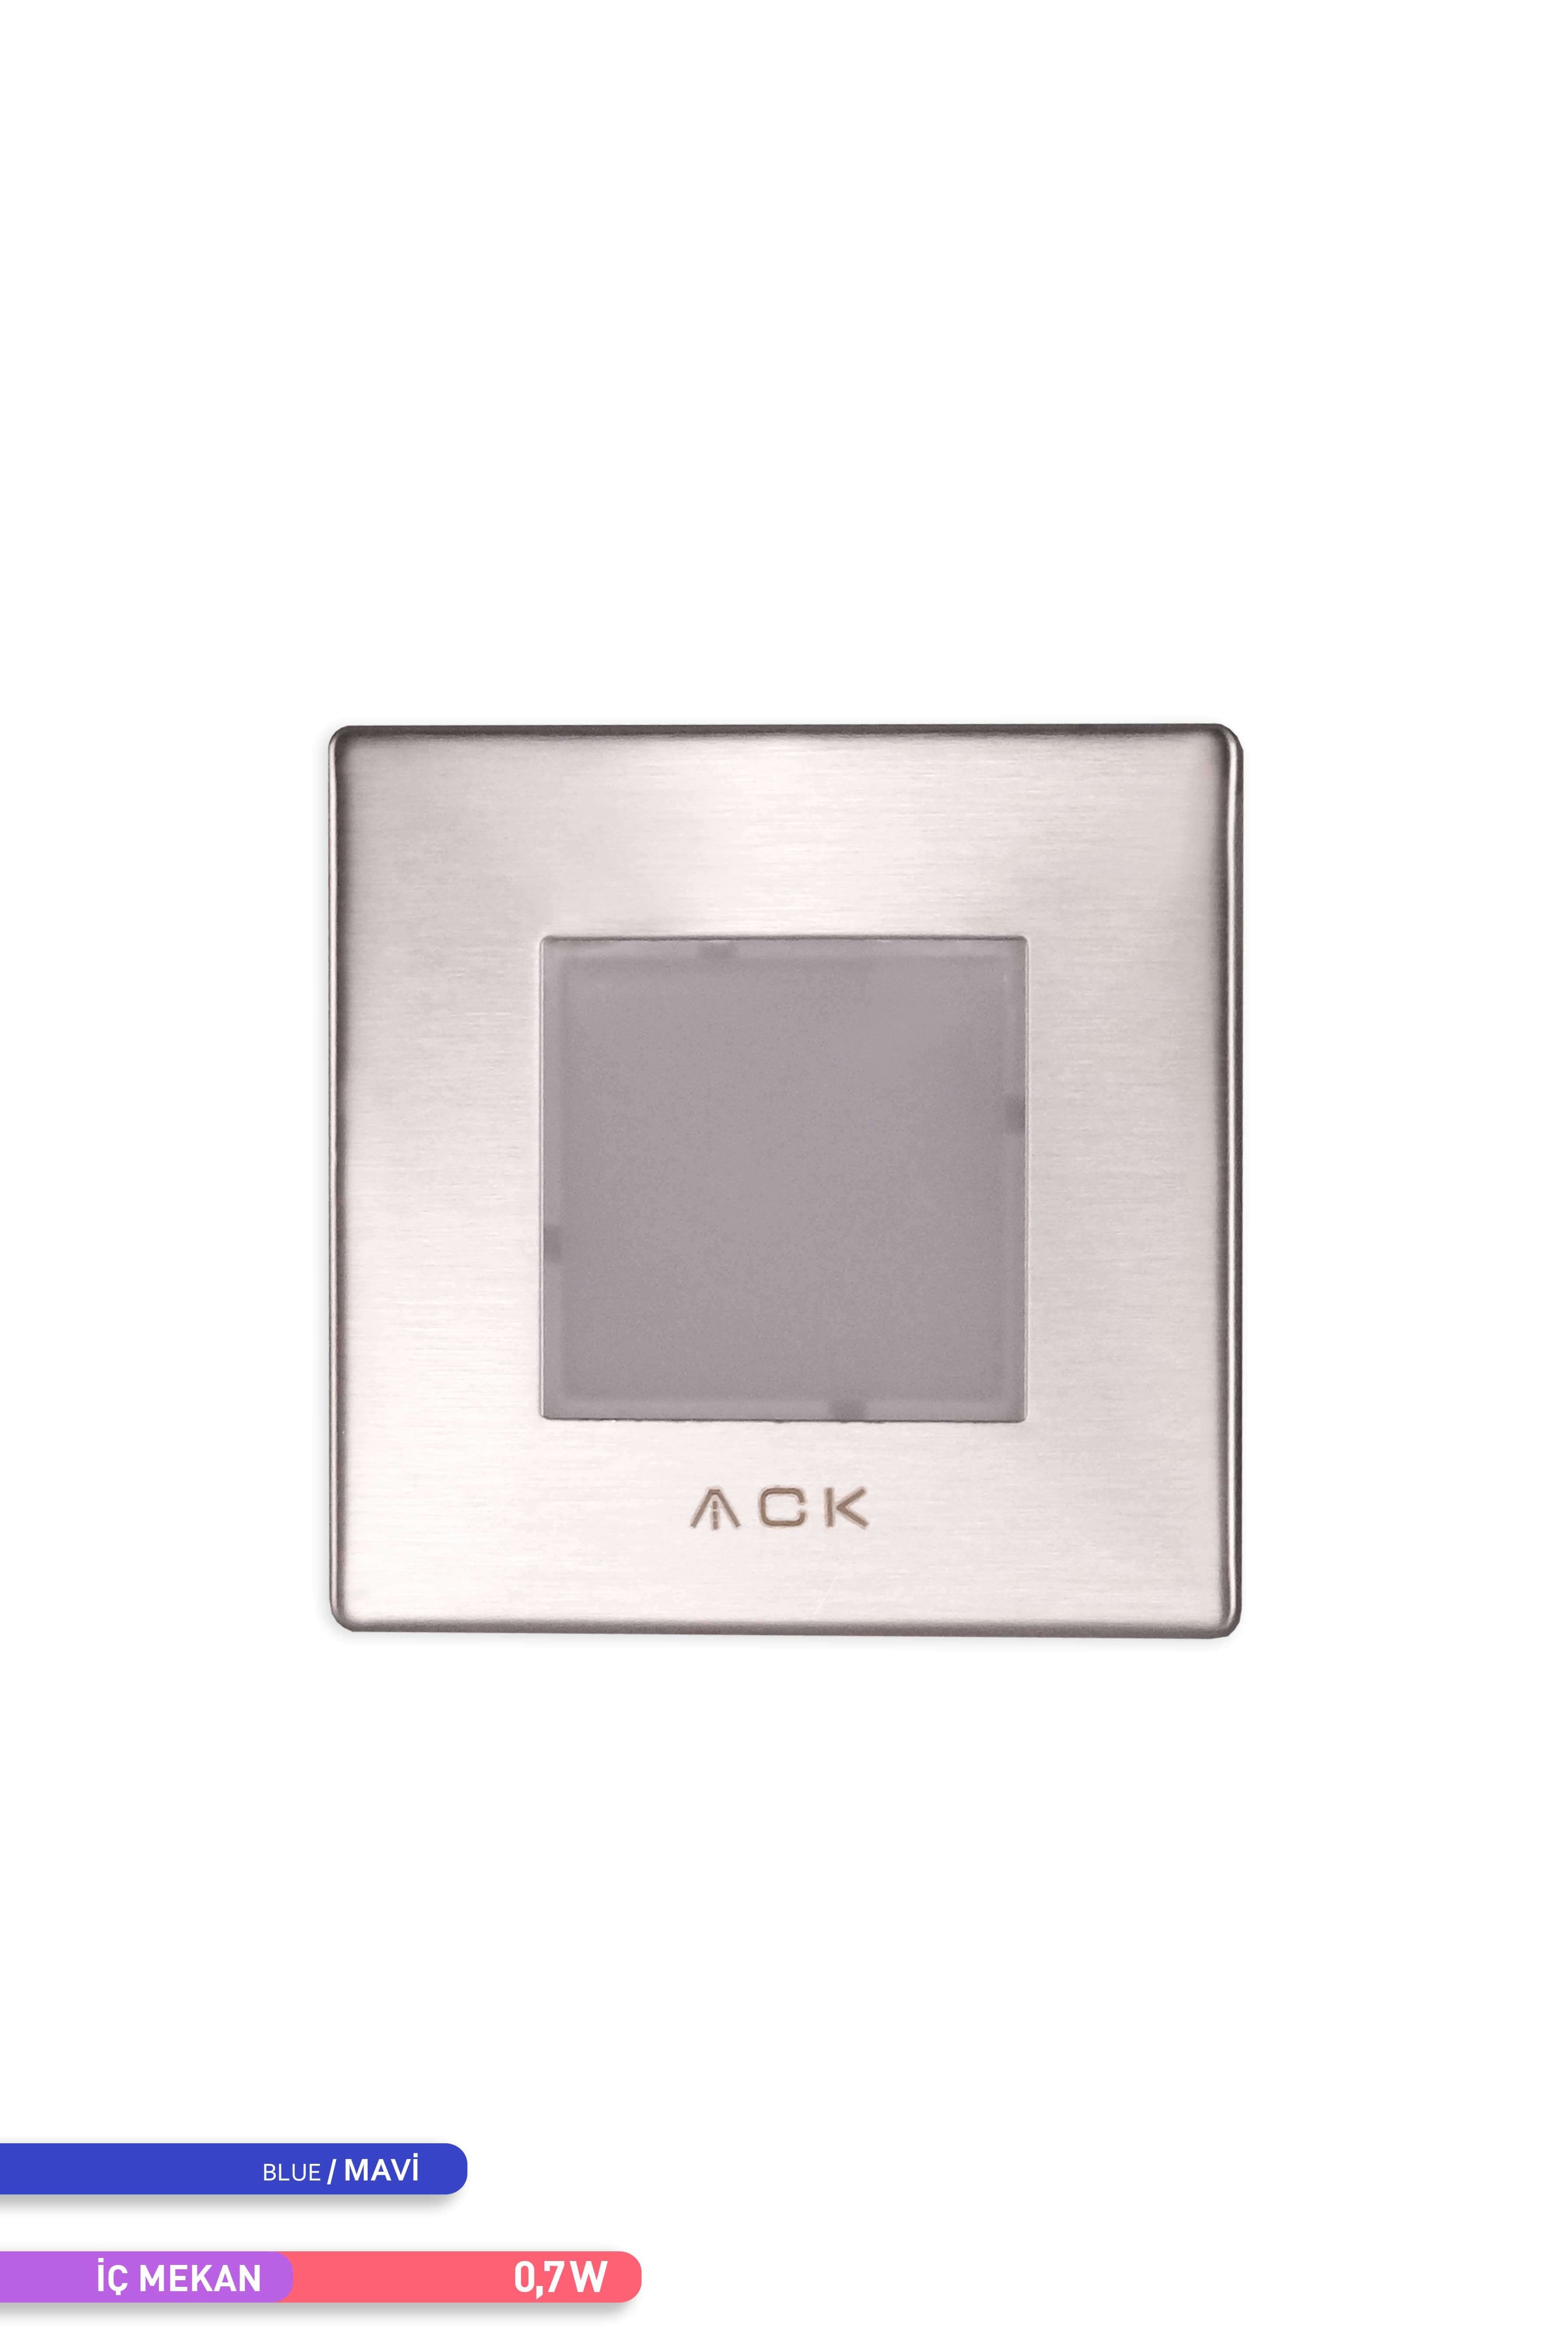 ACK LED Merdiven-Duvar Armatürü Kare Mavi Işık 0.7W